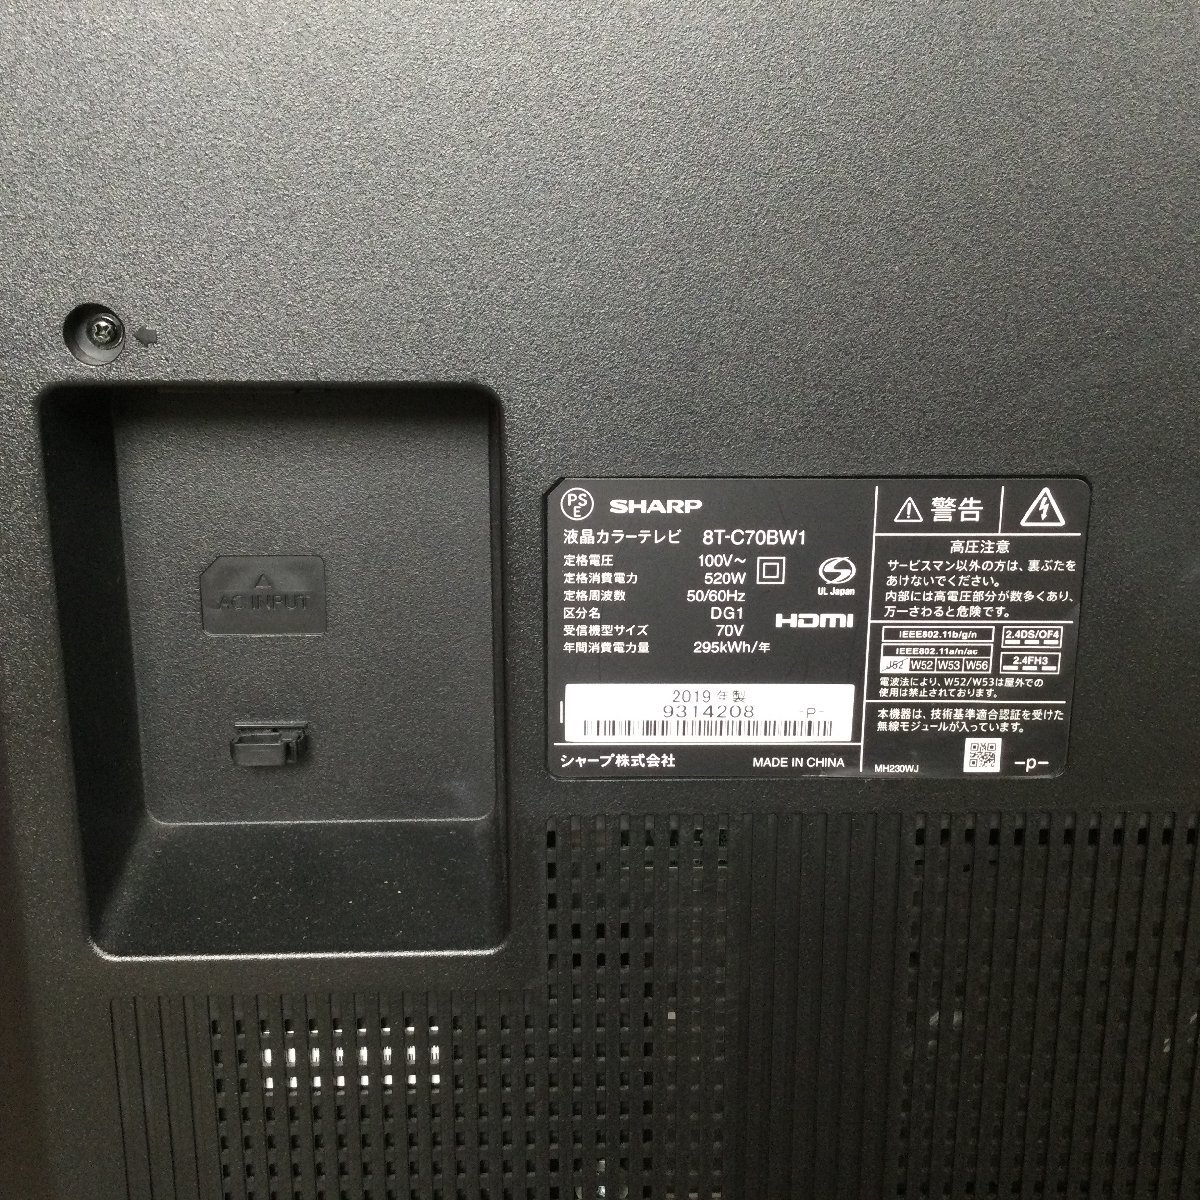 1204 SHARP AQUOS シャープ アクオス 8K 液晶テレビ 8T-C70BW1 70V型 2019年製 リモコン付きの画像8